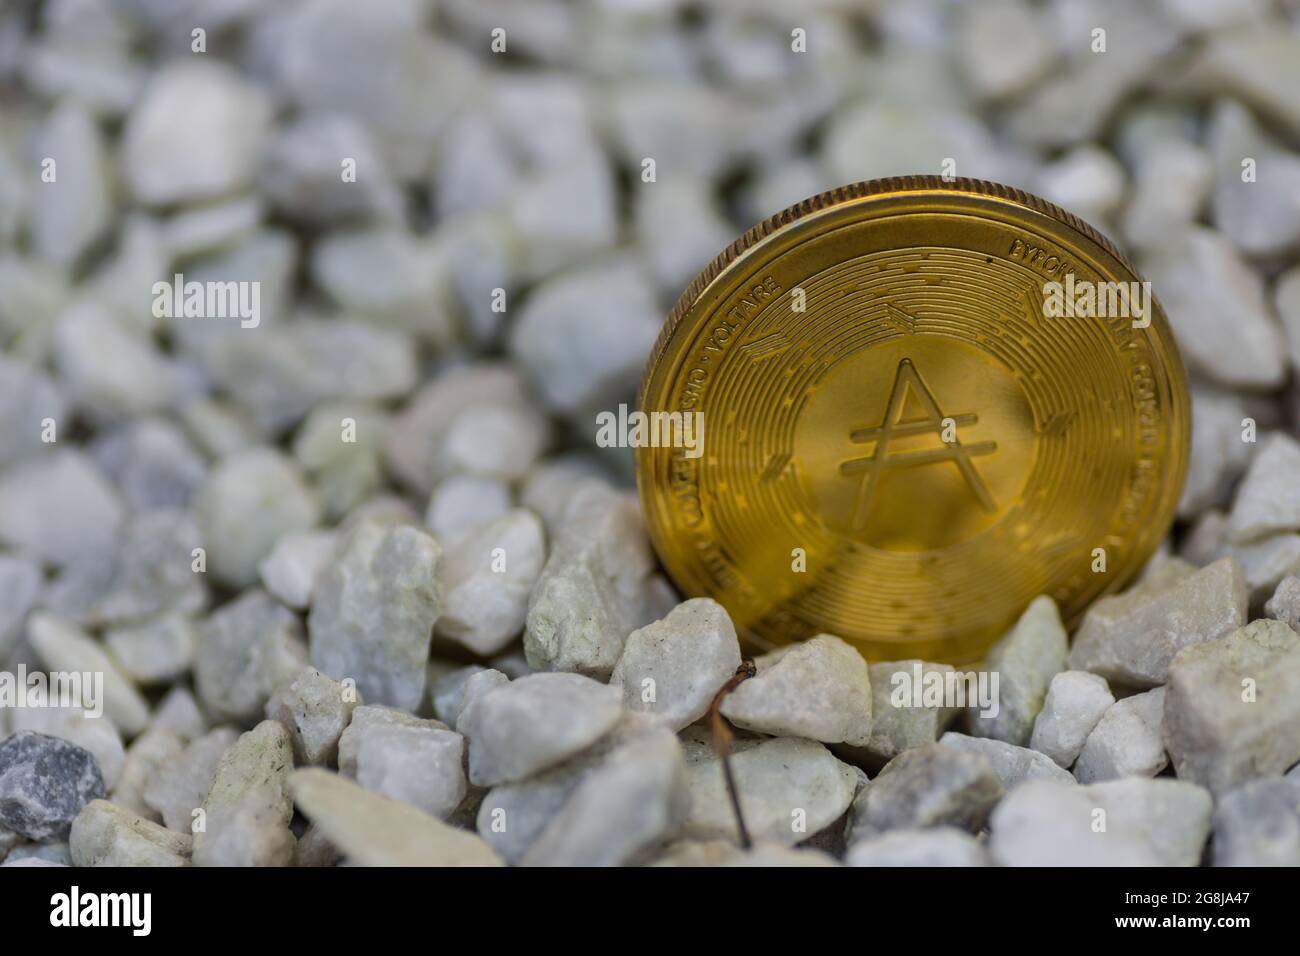 une seule pièce de monnaie ada dorée brillante de la monnaie de cardano debout dans un gravier avant droit Banque D'Images